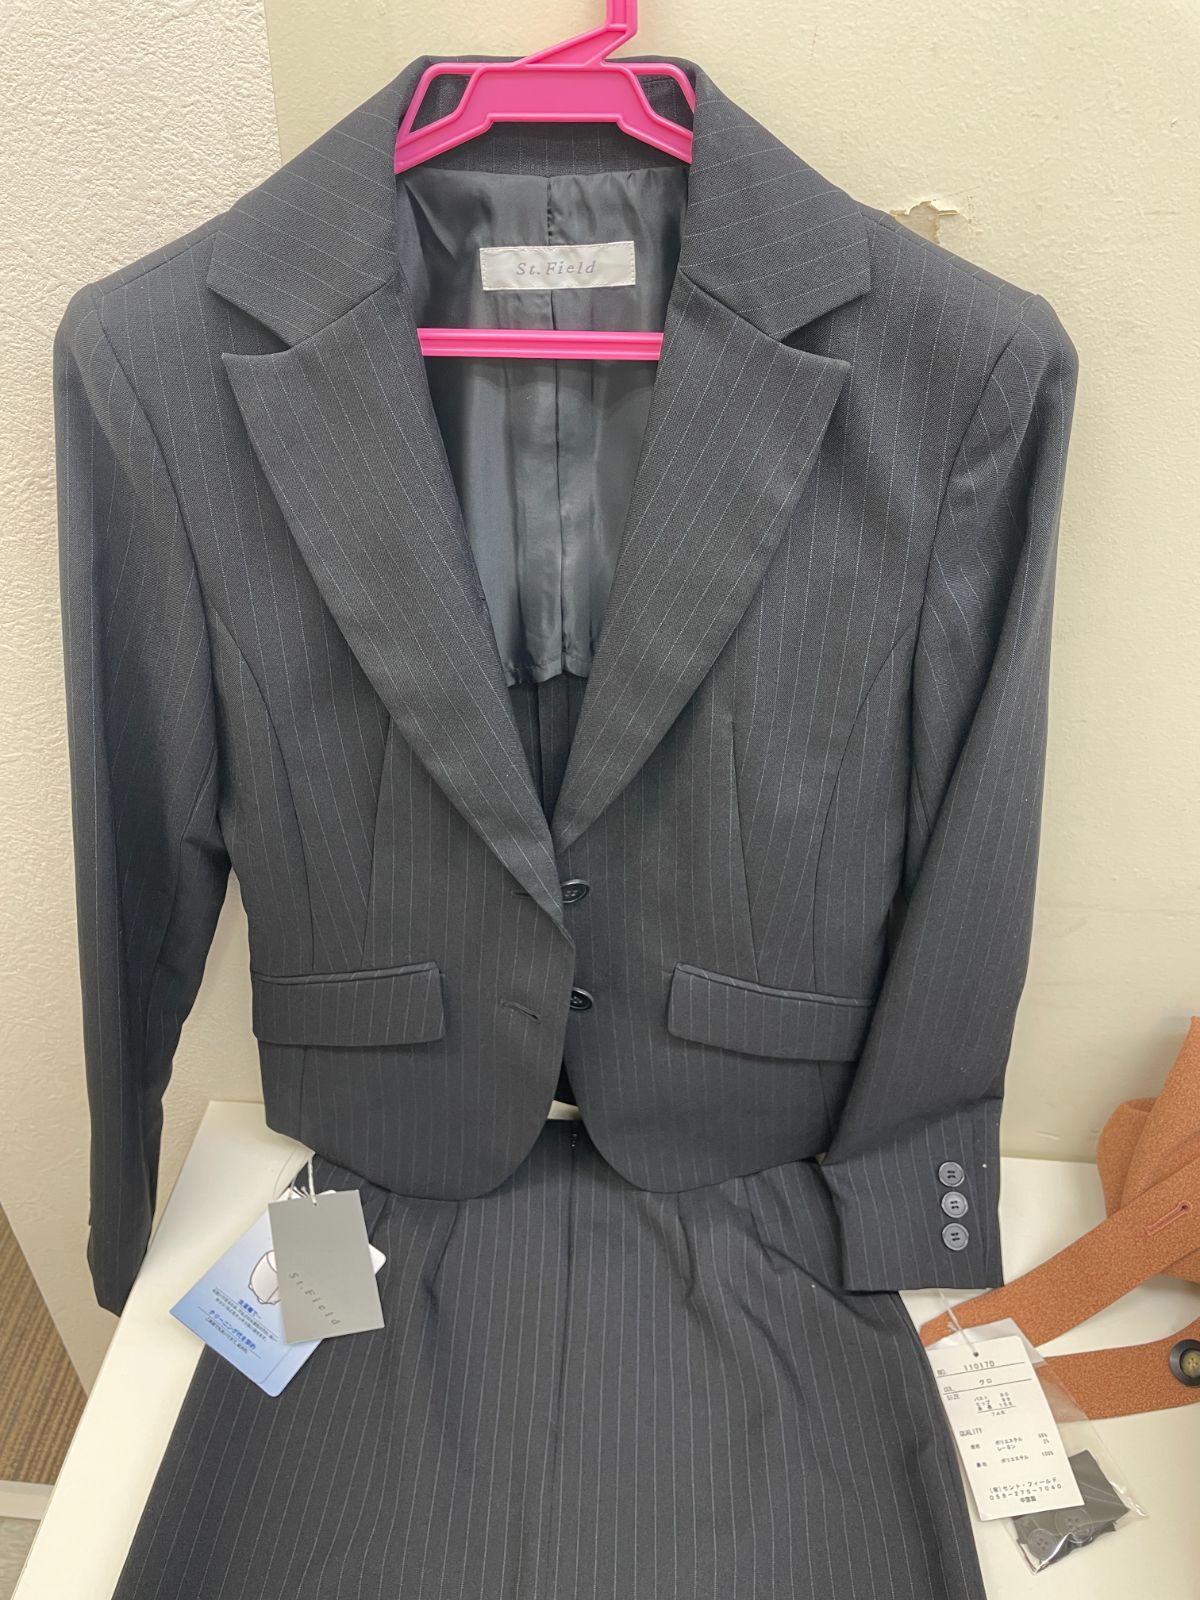 K【未使用】St.Field レディース ビジネススーツ セットアップ - shop